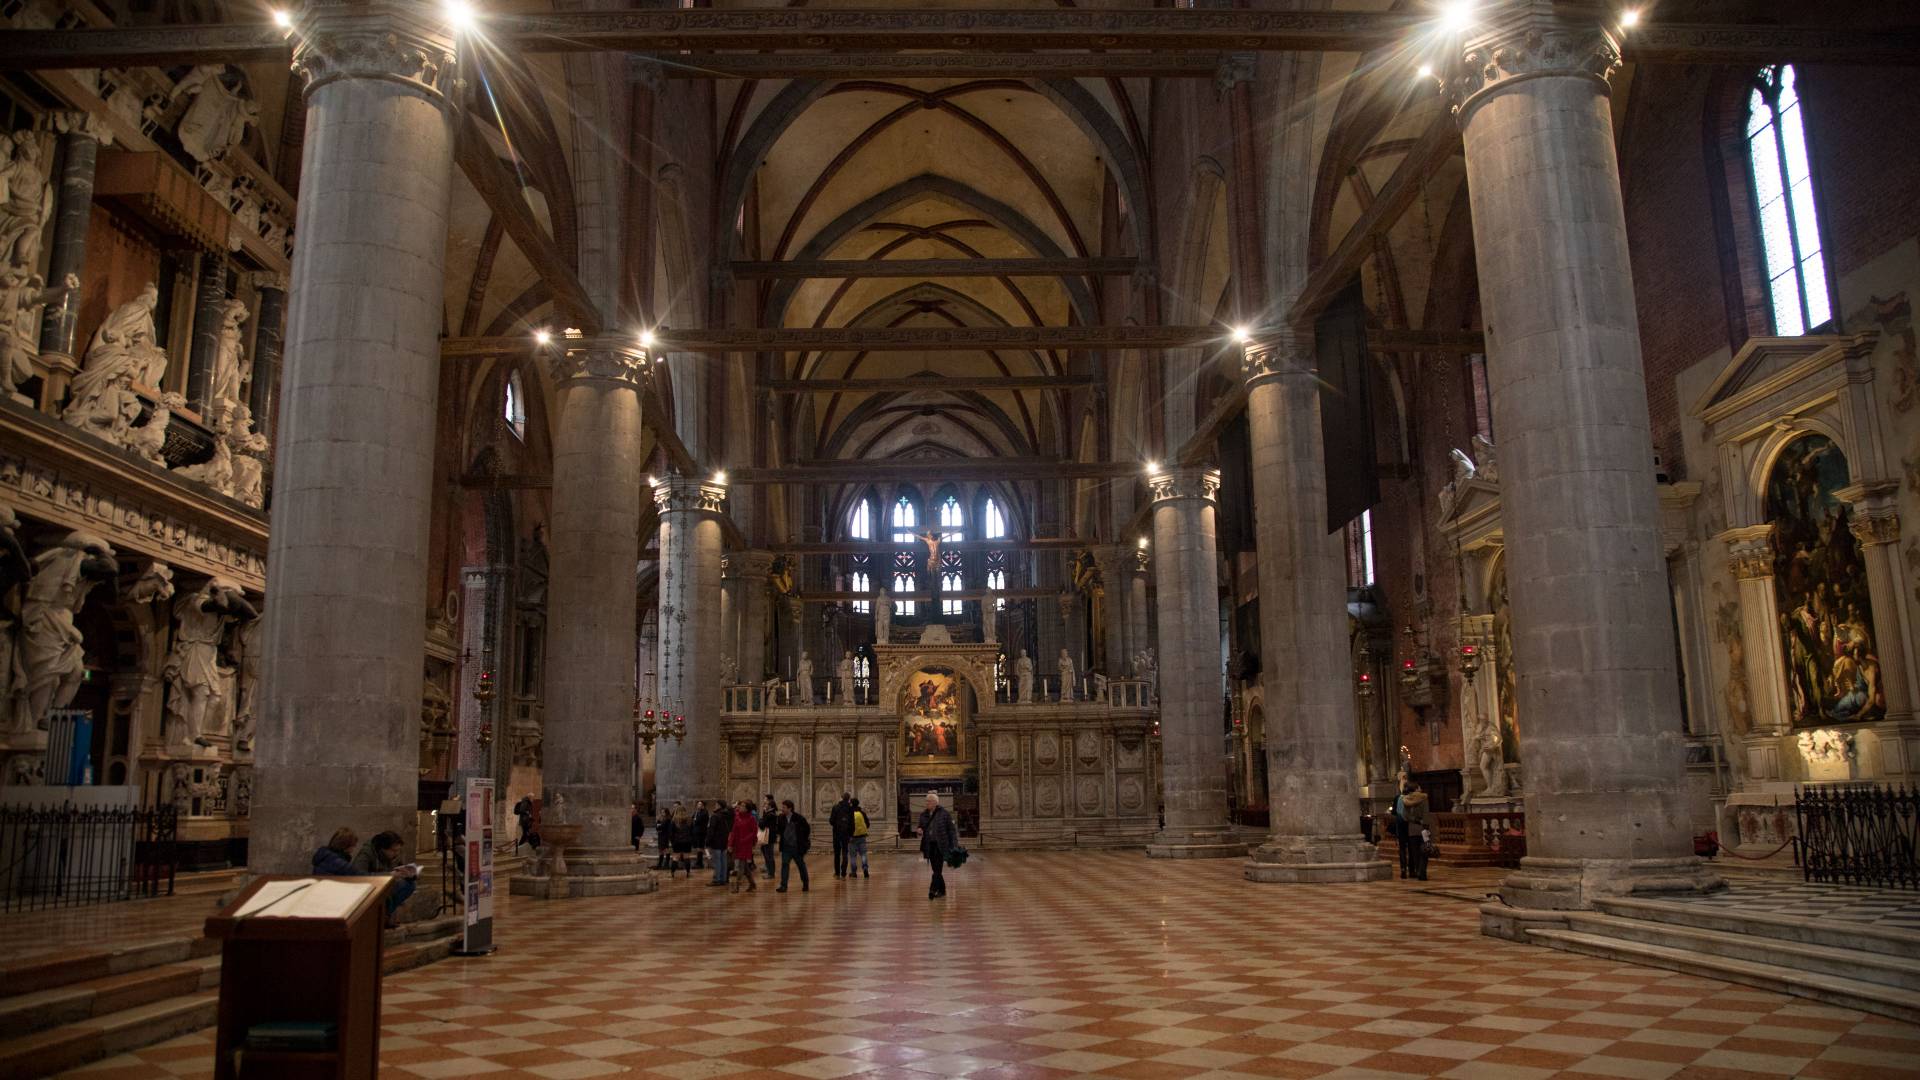 Interior or Santa Maria Gloriosa del Frari church in Venice